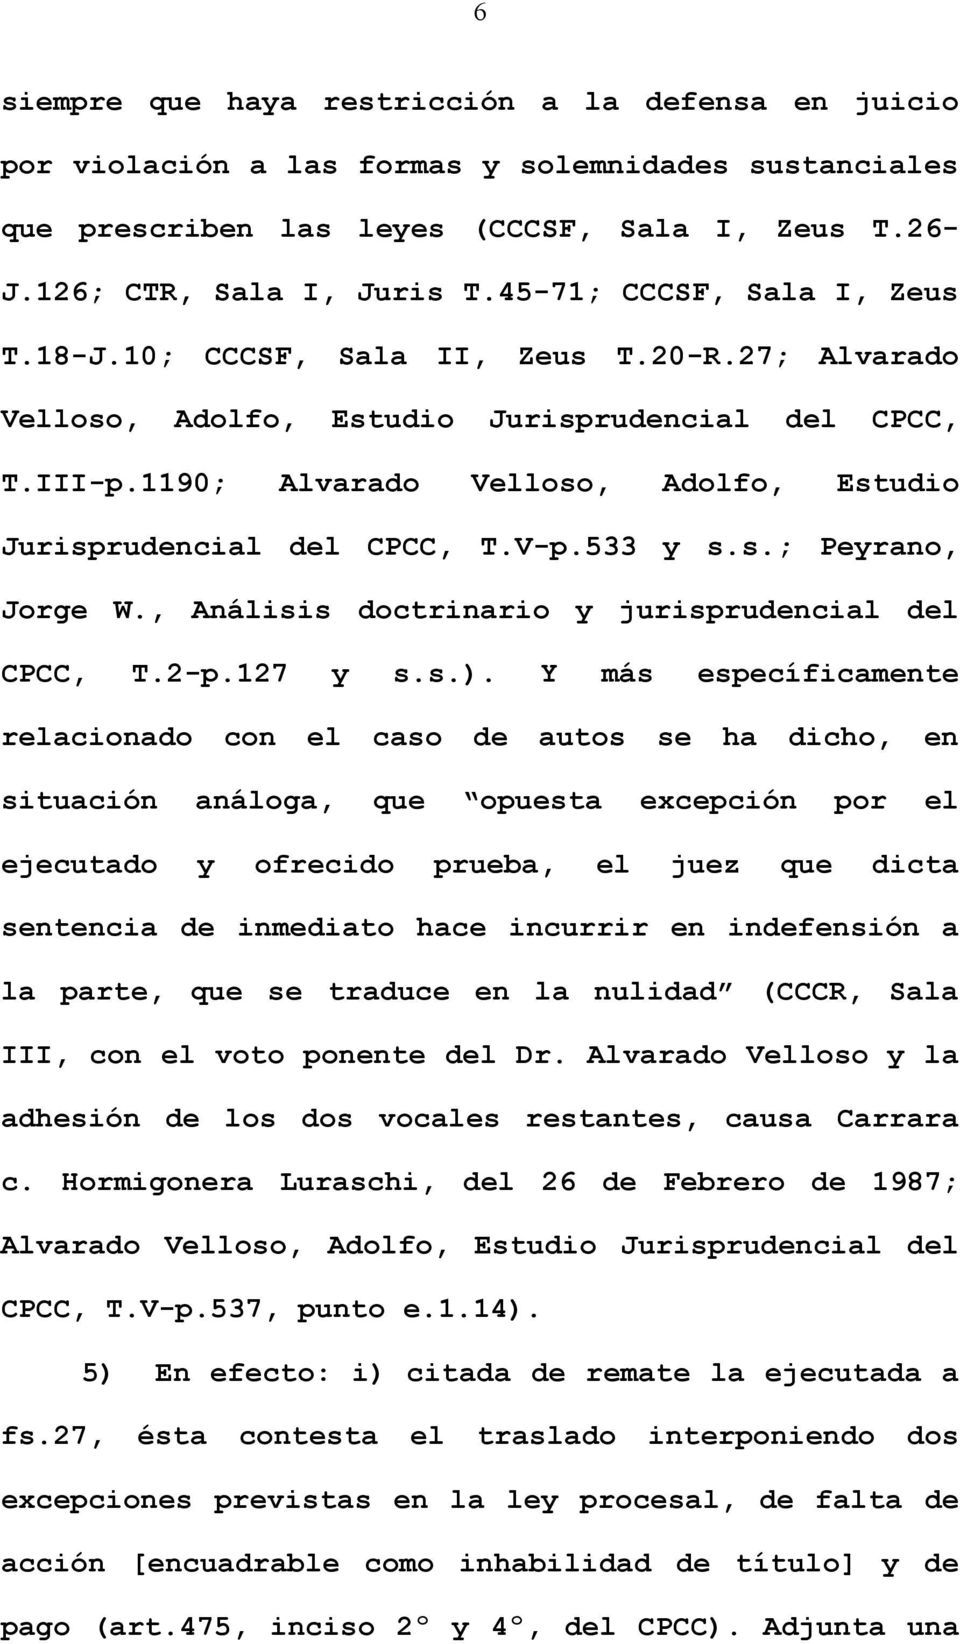 1190; Alvarado Velloso, Adolfo, Estudio Jurisprudencial del CPCC, T.V-p.533 y s.s.; Peyrano, Jorge W., Análisis doctrinario y jurisprudencial del CPCC, T.2-p.127 y s.s.).